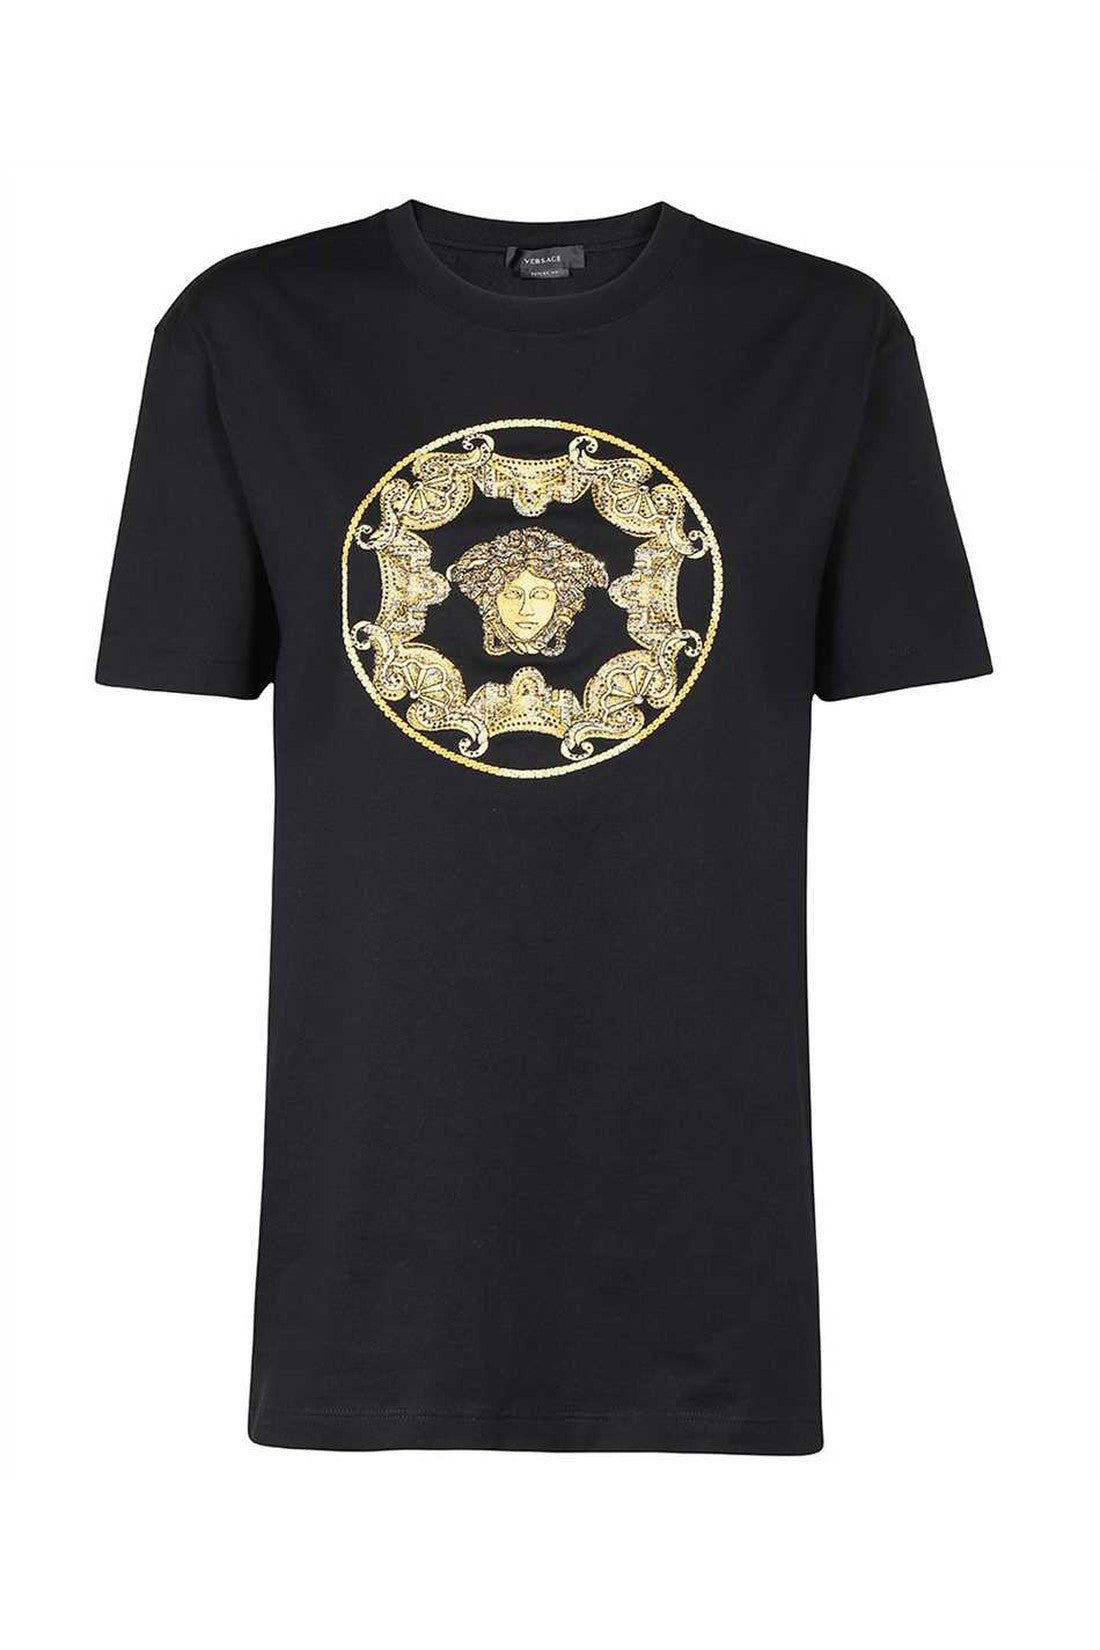 Logo cotton t-shirt-Versace-OUTLET-SALE-L-ARCHIVIST